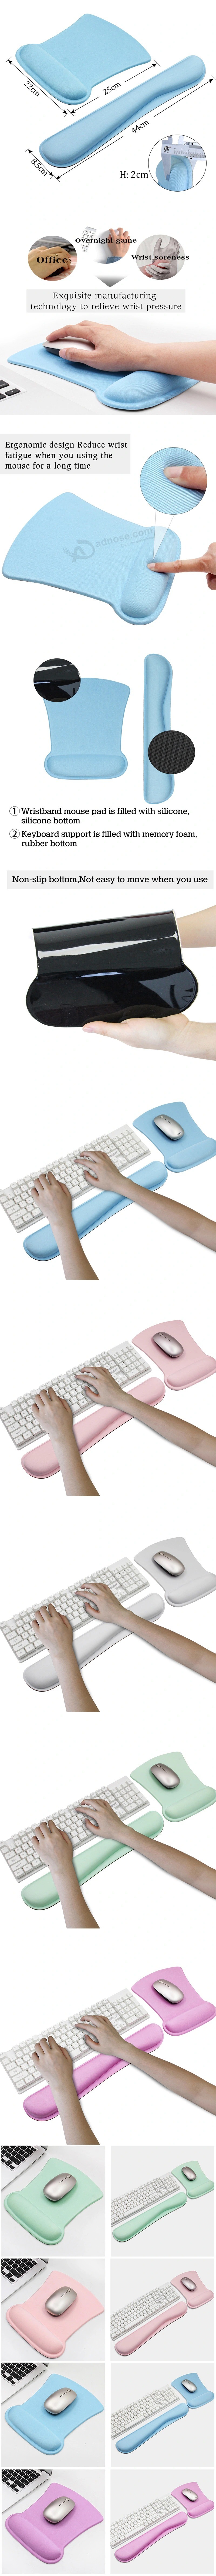 부드러운 컴퓨터 내구성있는 손목 받침대 마우스 패드